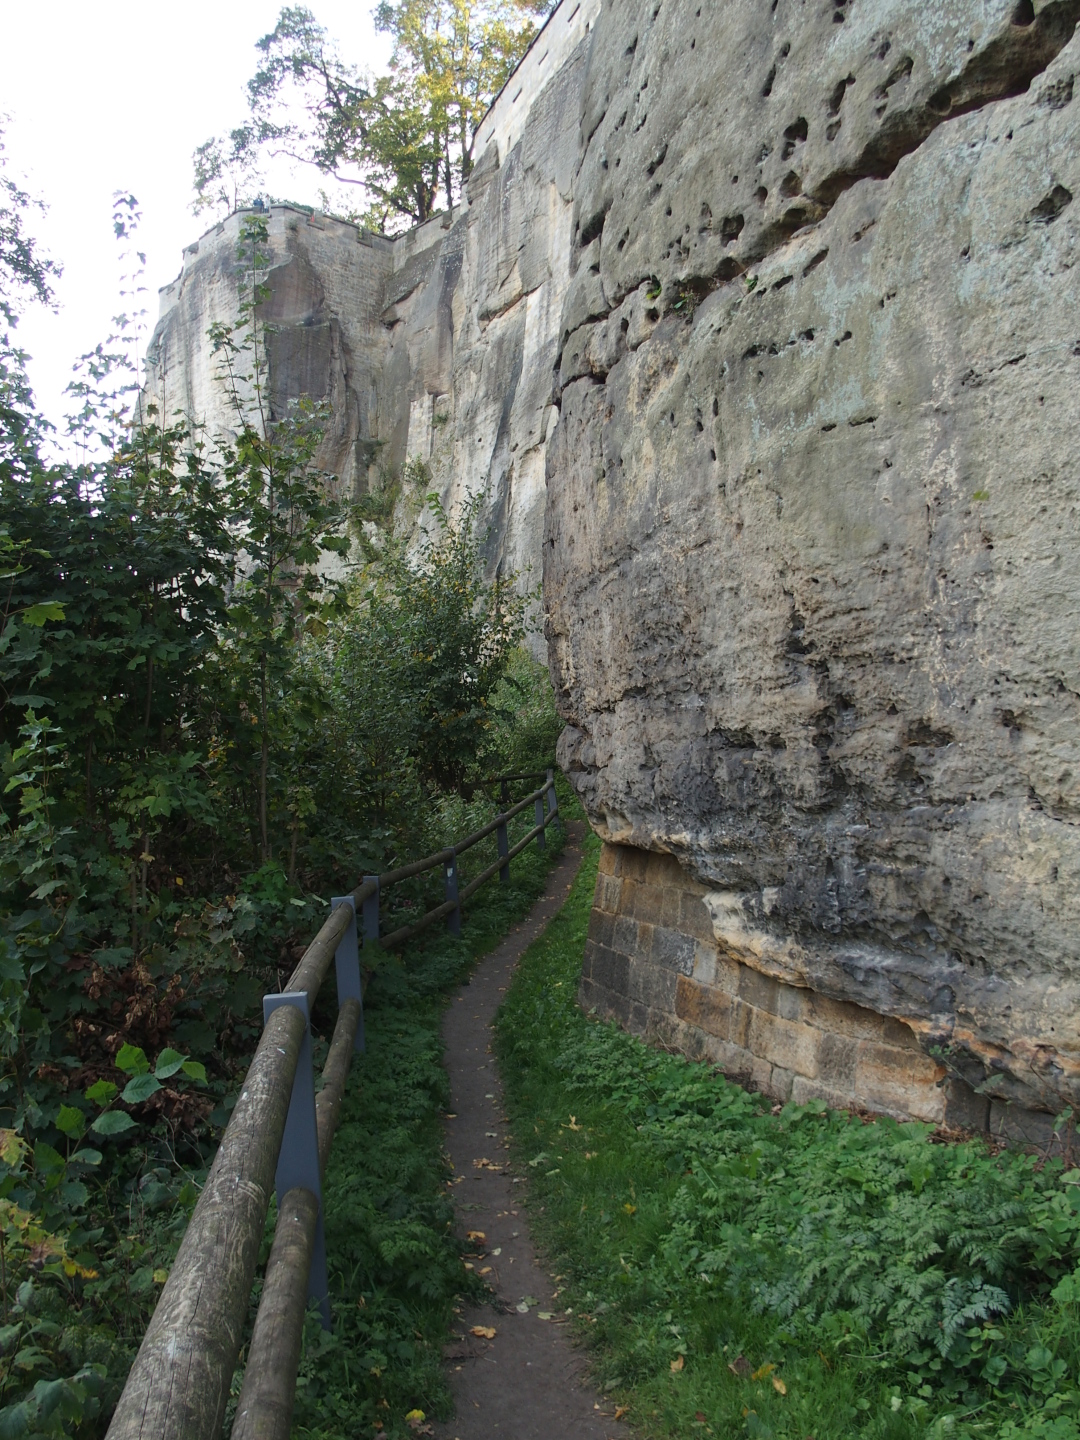 Der Weinkeller. Das Riesenfass ist nicht mehr da. Der Patrouilleweg führt außen an den steilen Felsen entlang um die Festung herum.